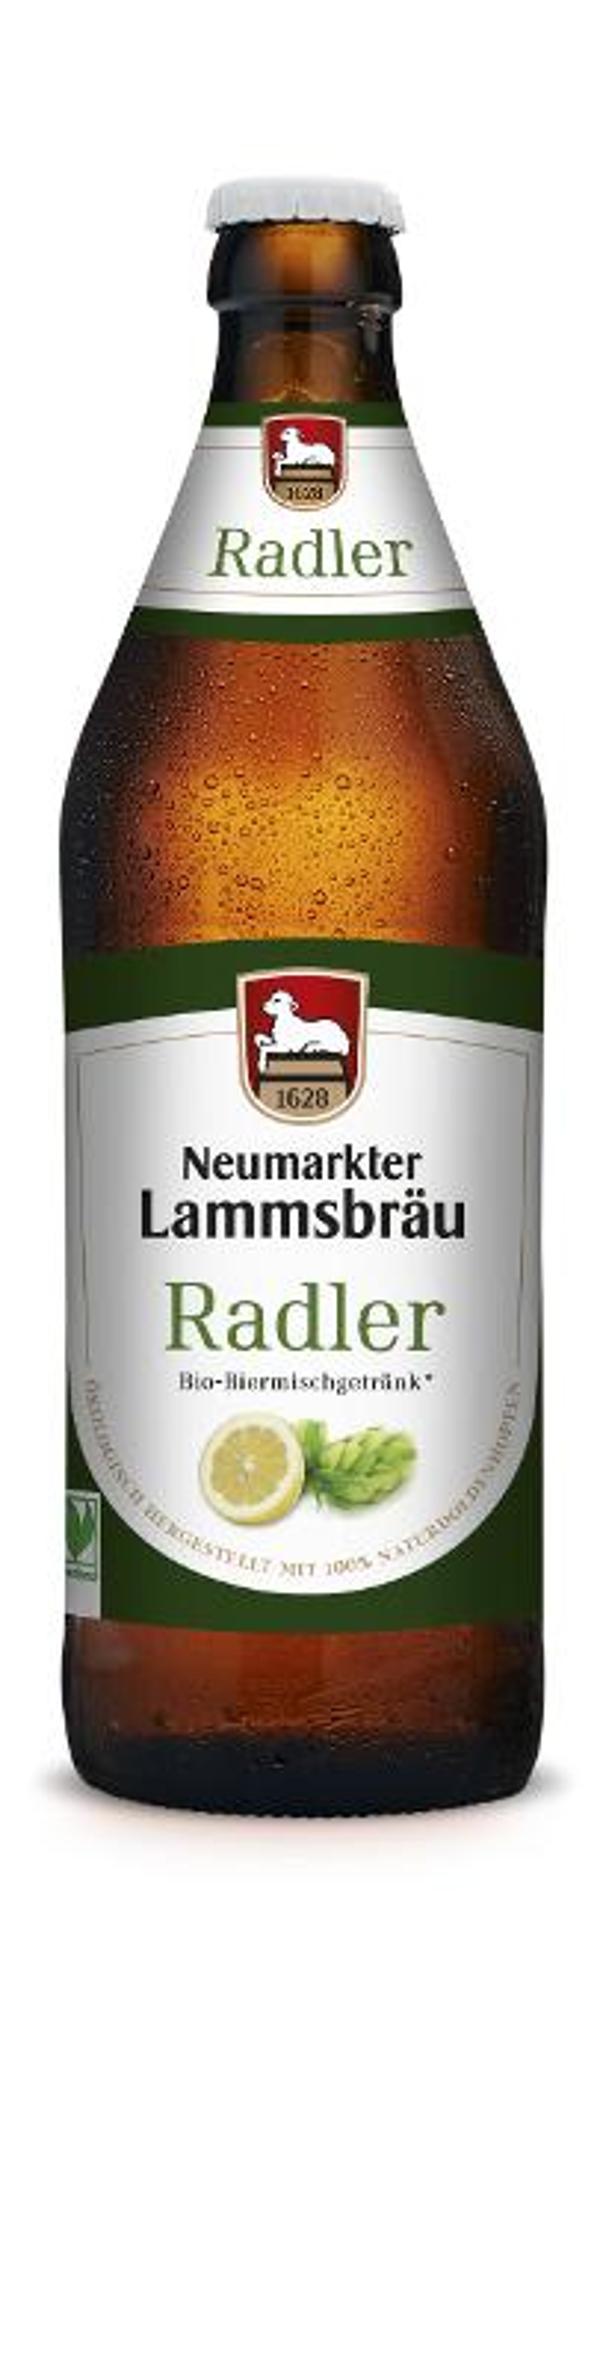 Produktfoto zu Lammsbräu Radler 0,5 l Kasten